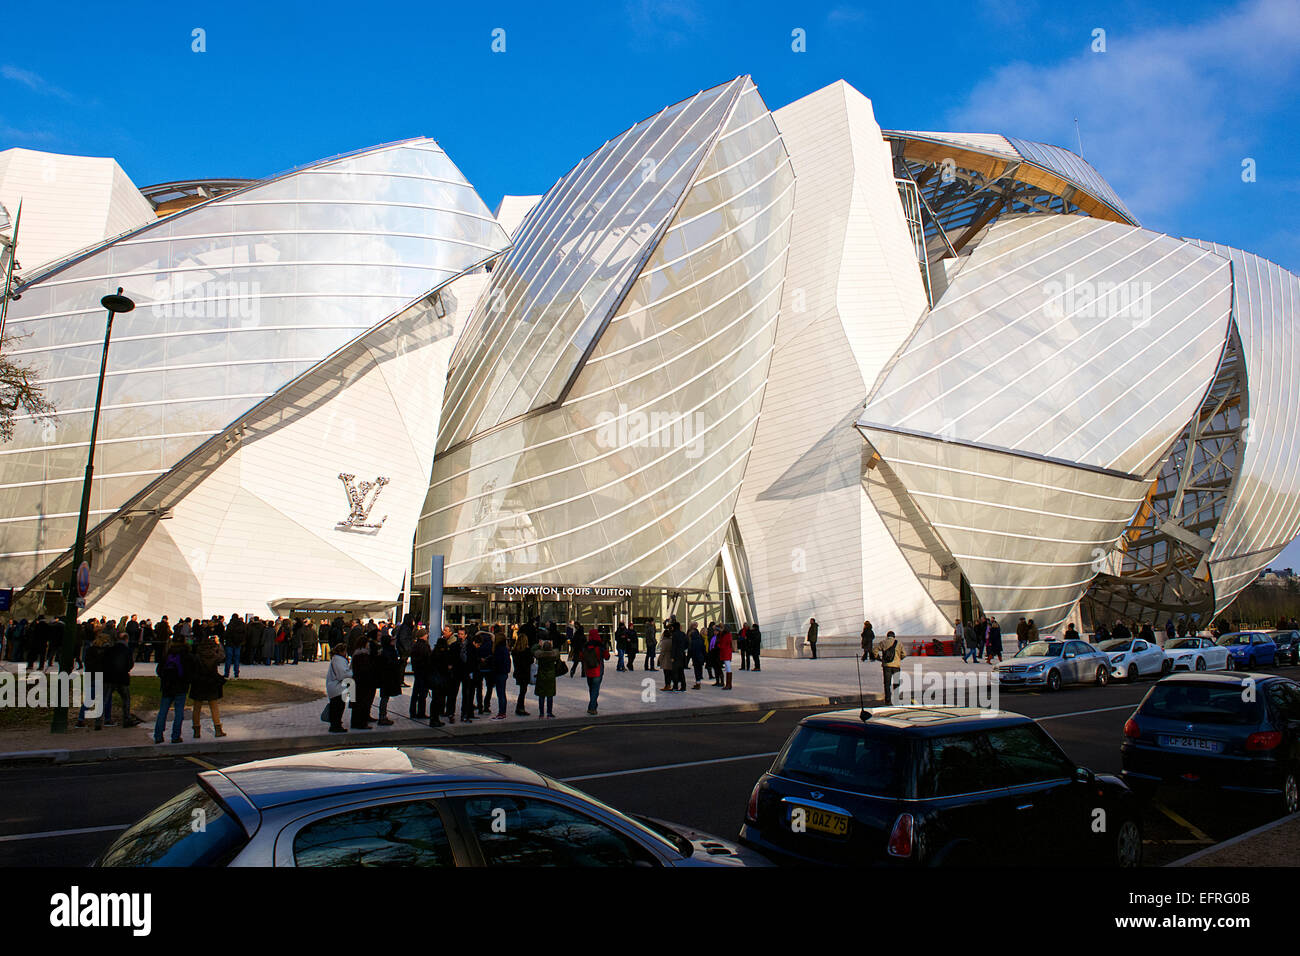 Louis Vuitton Foundation Museum, Paris, France Stock Photo: 78578763 - Alamy